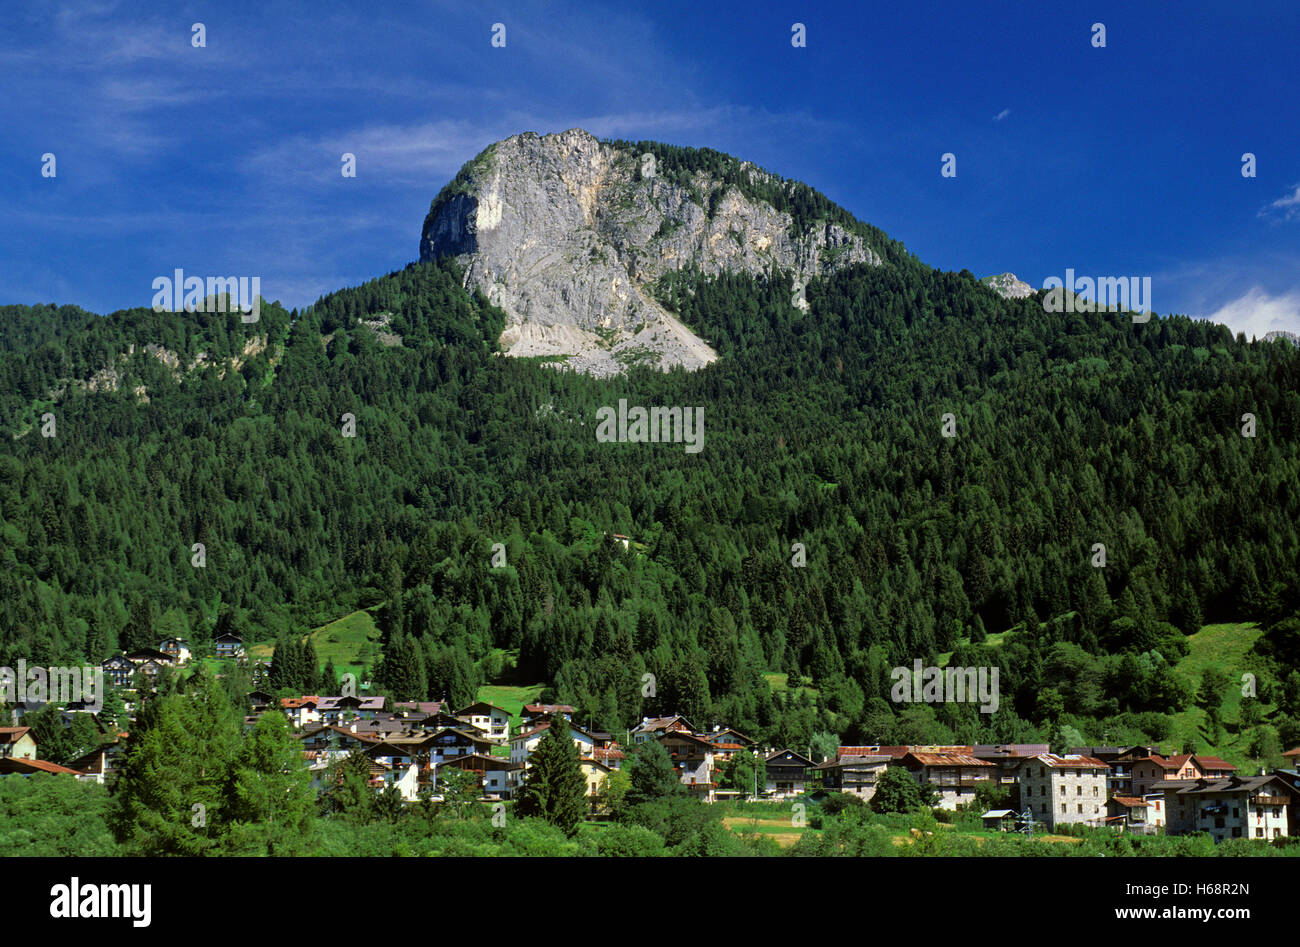 Forni di Sopra borgo e montagne, Carnia, Dolomiti Friulane parco naturale, Friuli Venezia Giulia, Italia Foto Stock